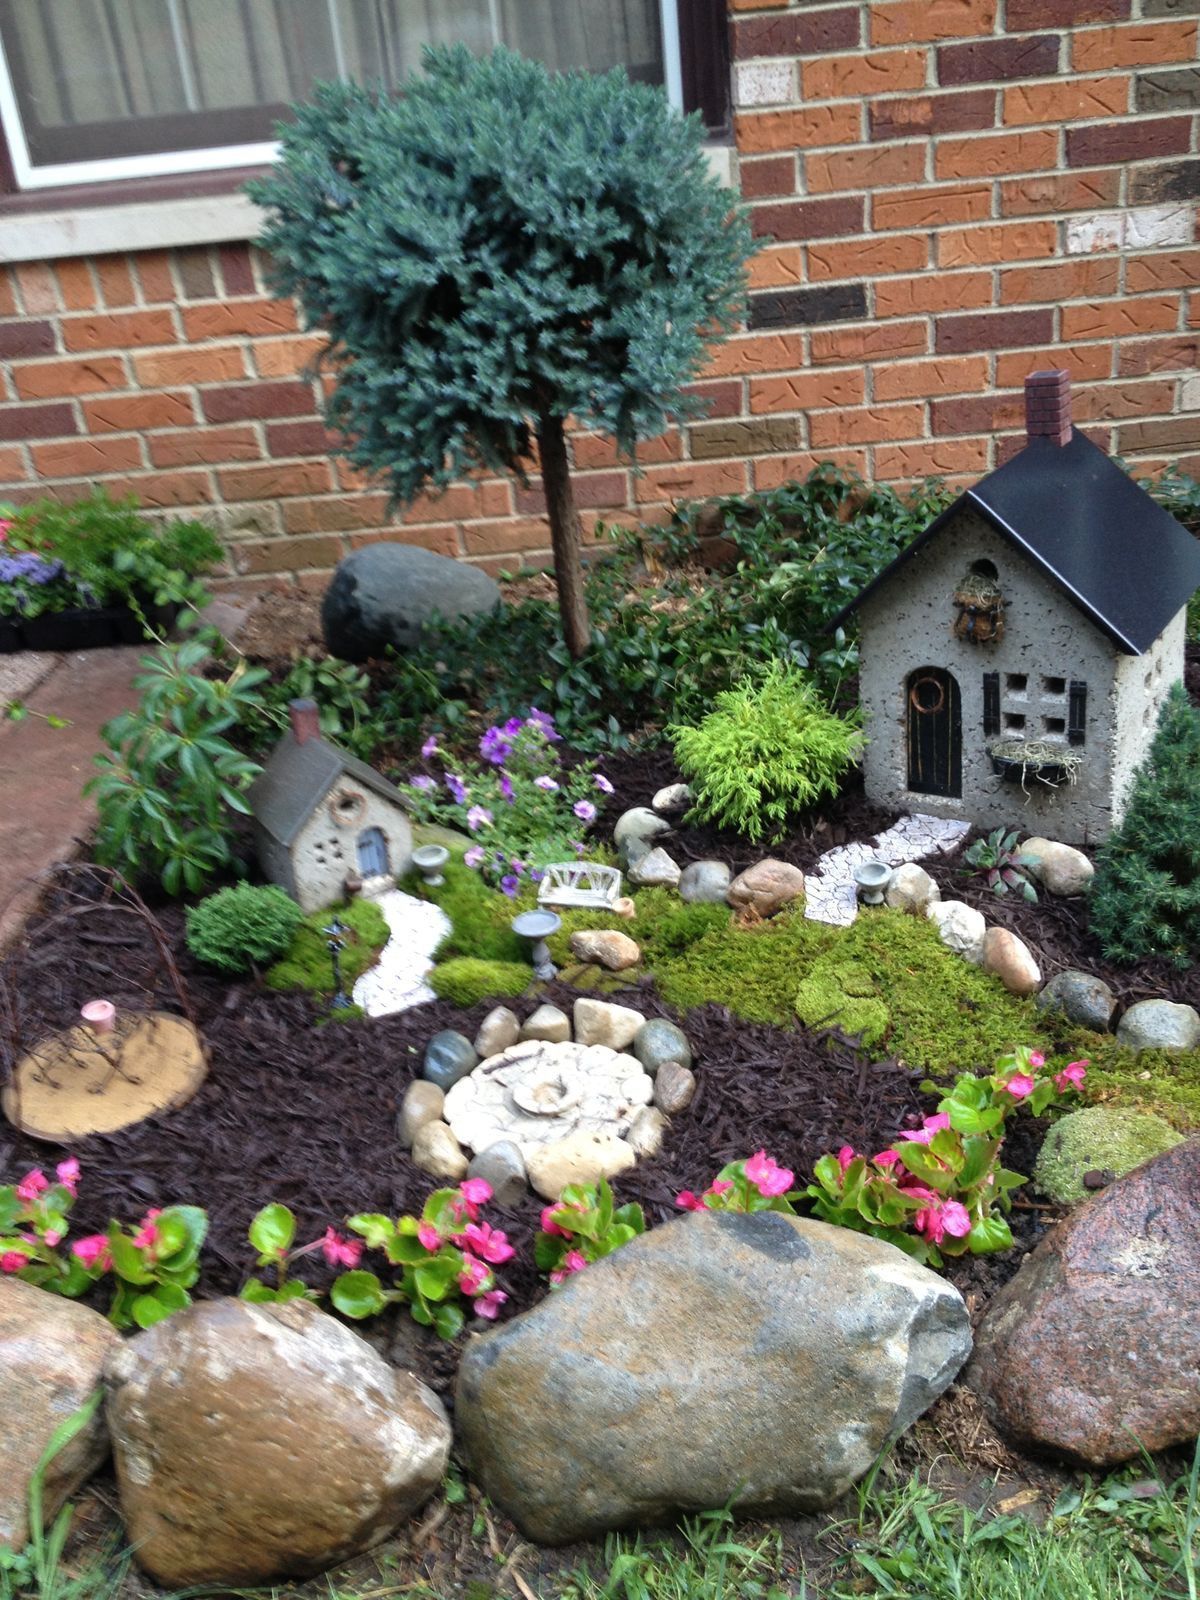 Lindo mini jardín #fairygarden